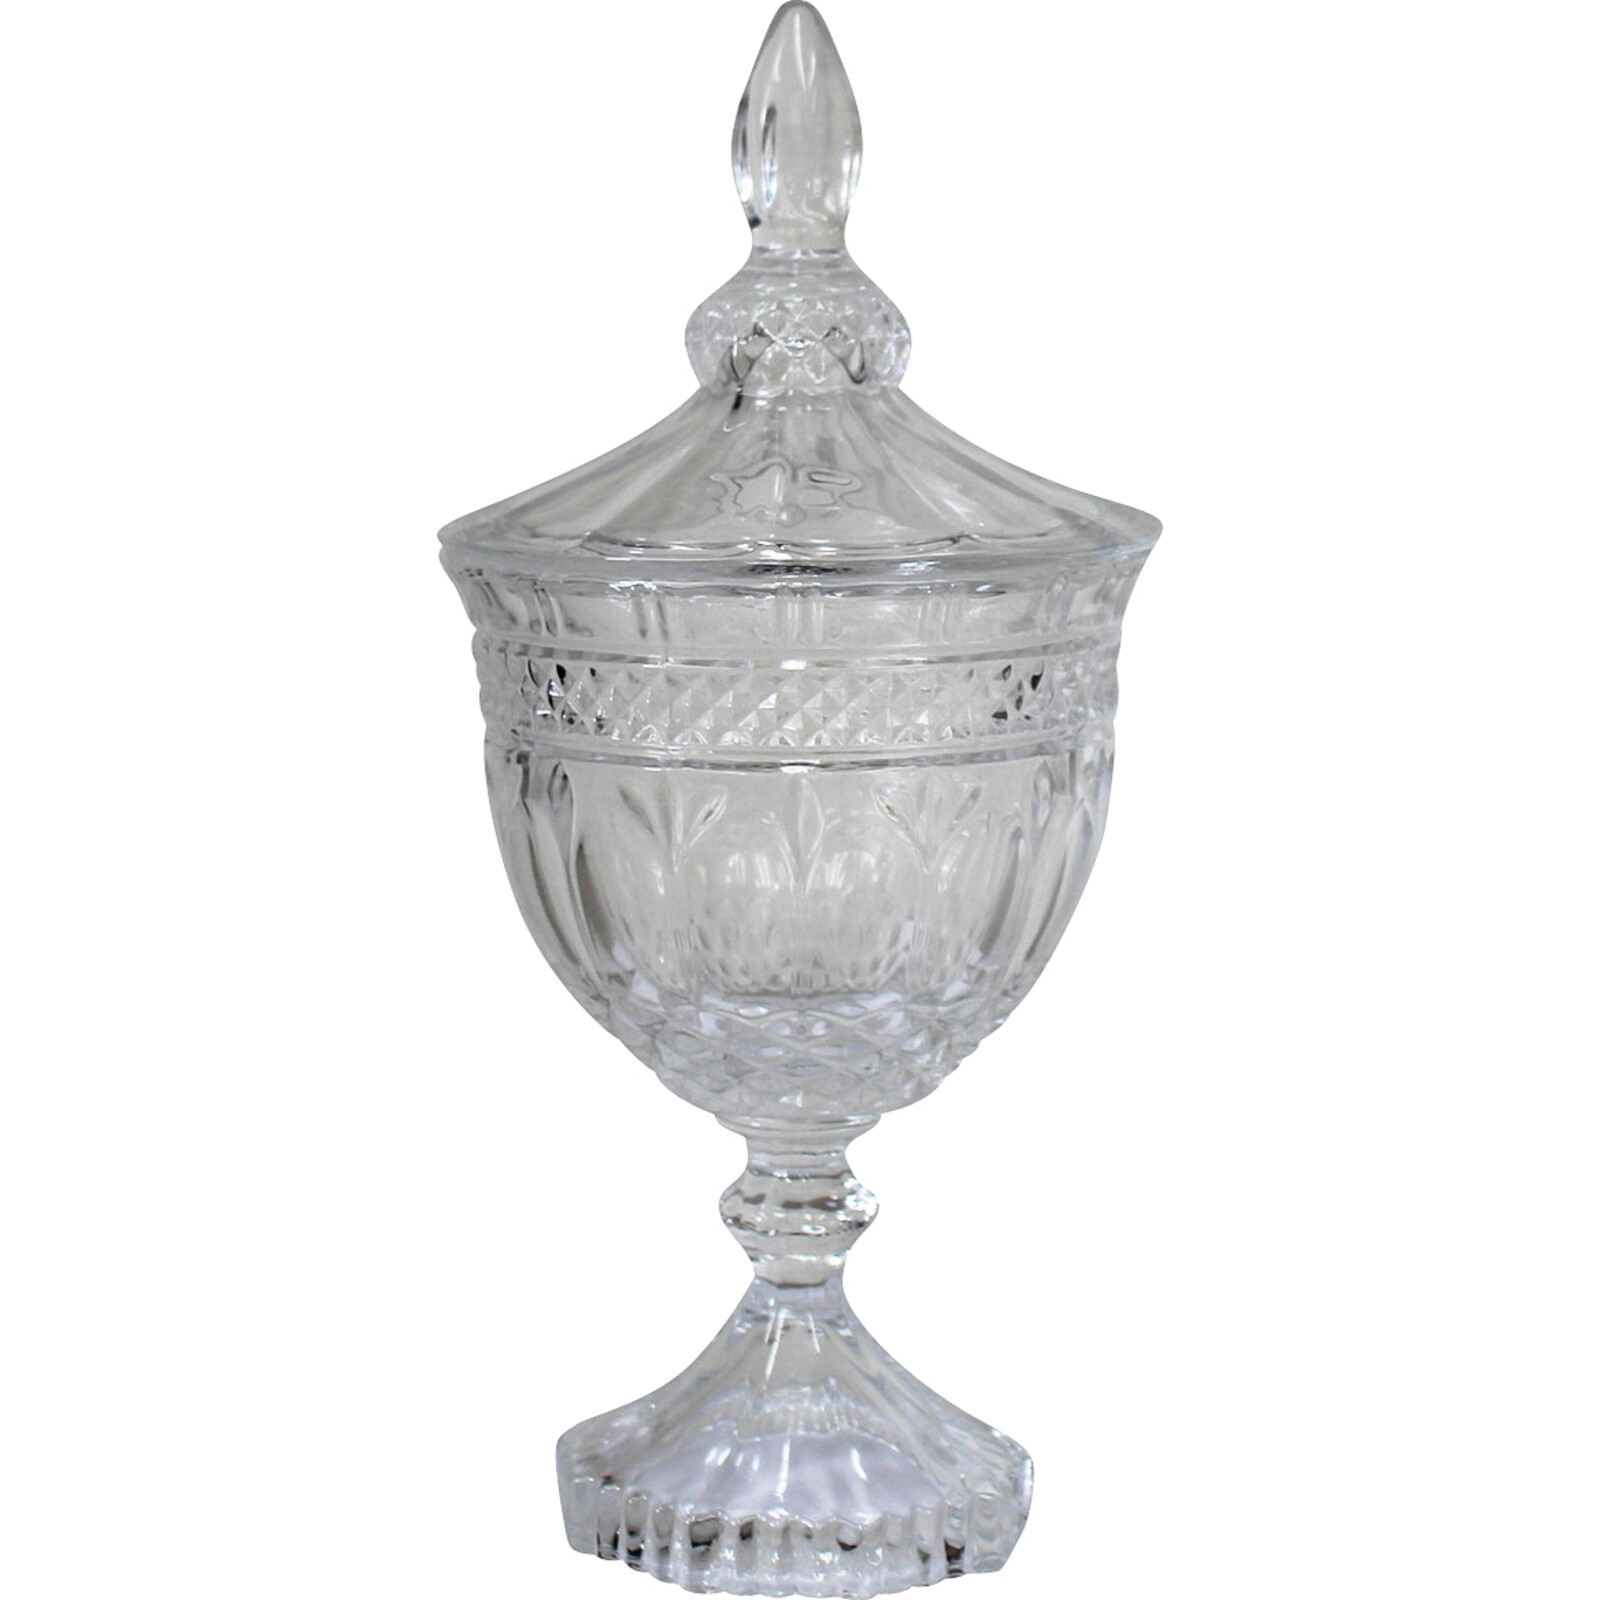 Glass Jar Ornate